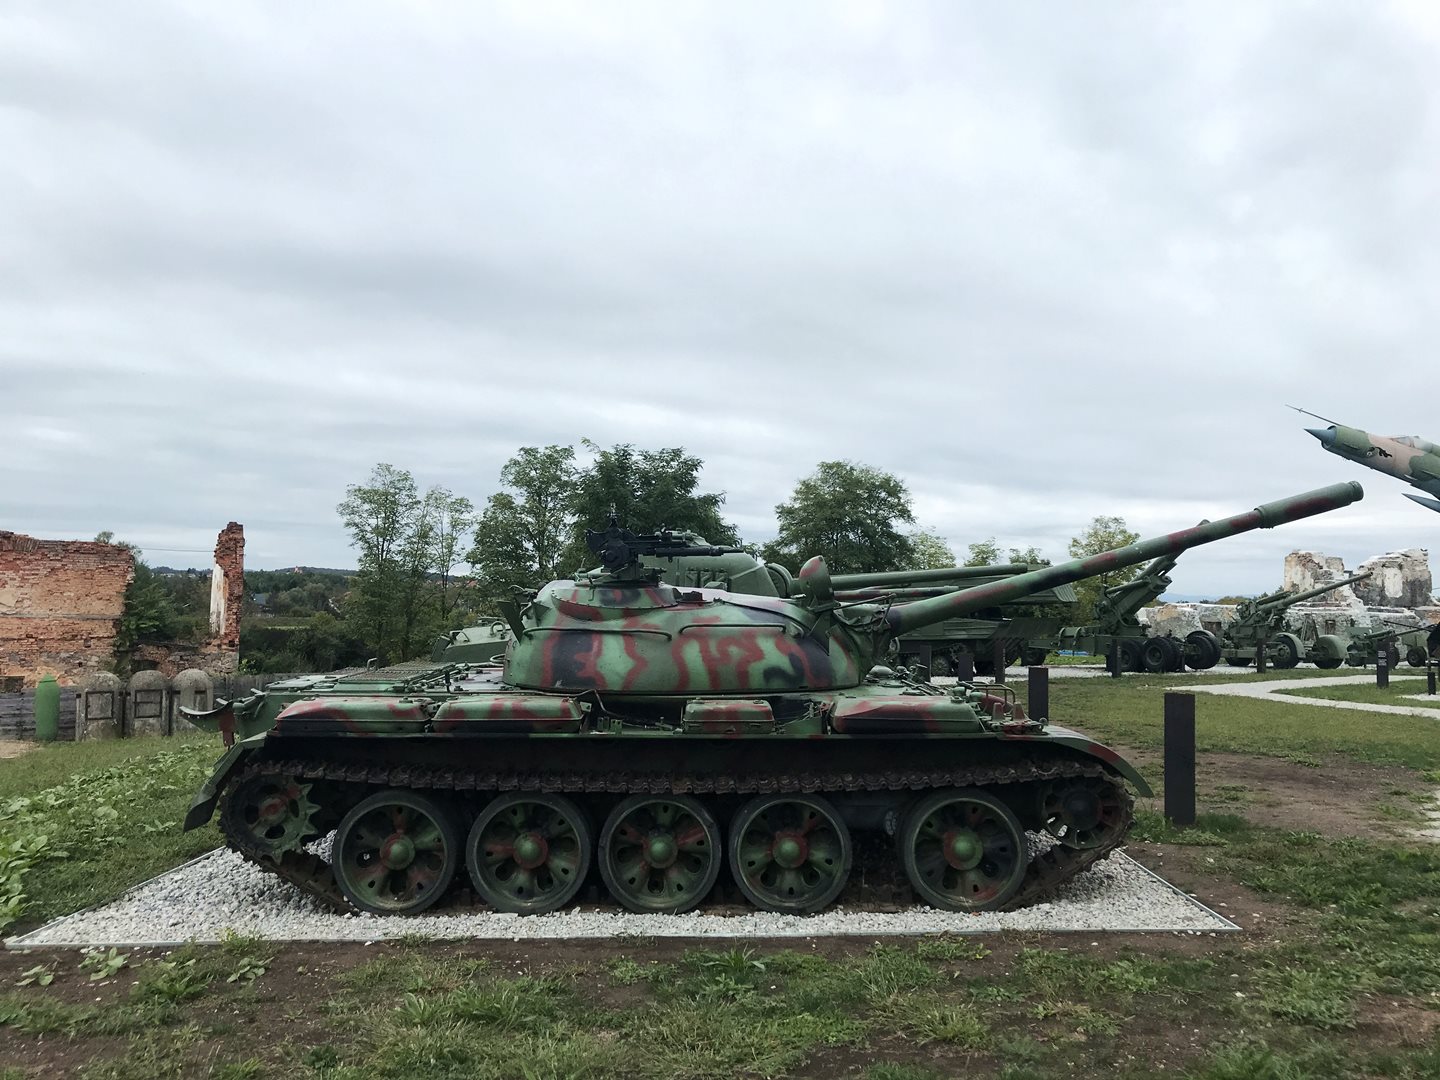 Tankok délszláv háború emlékét őrző múzeumban